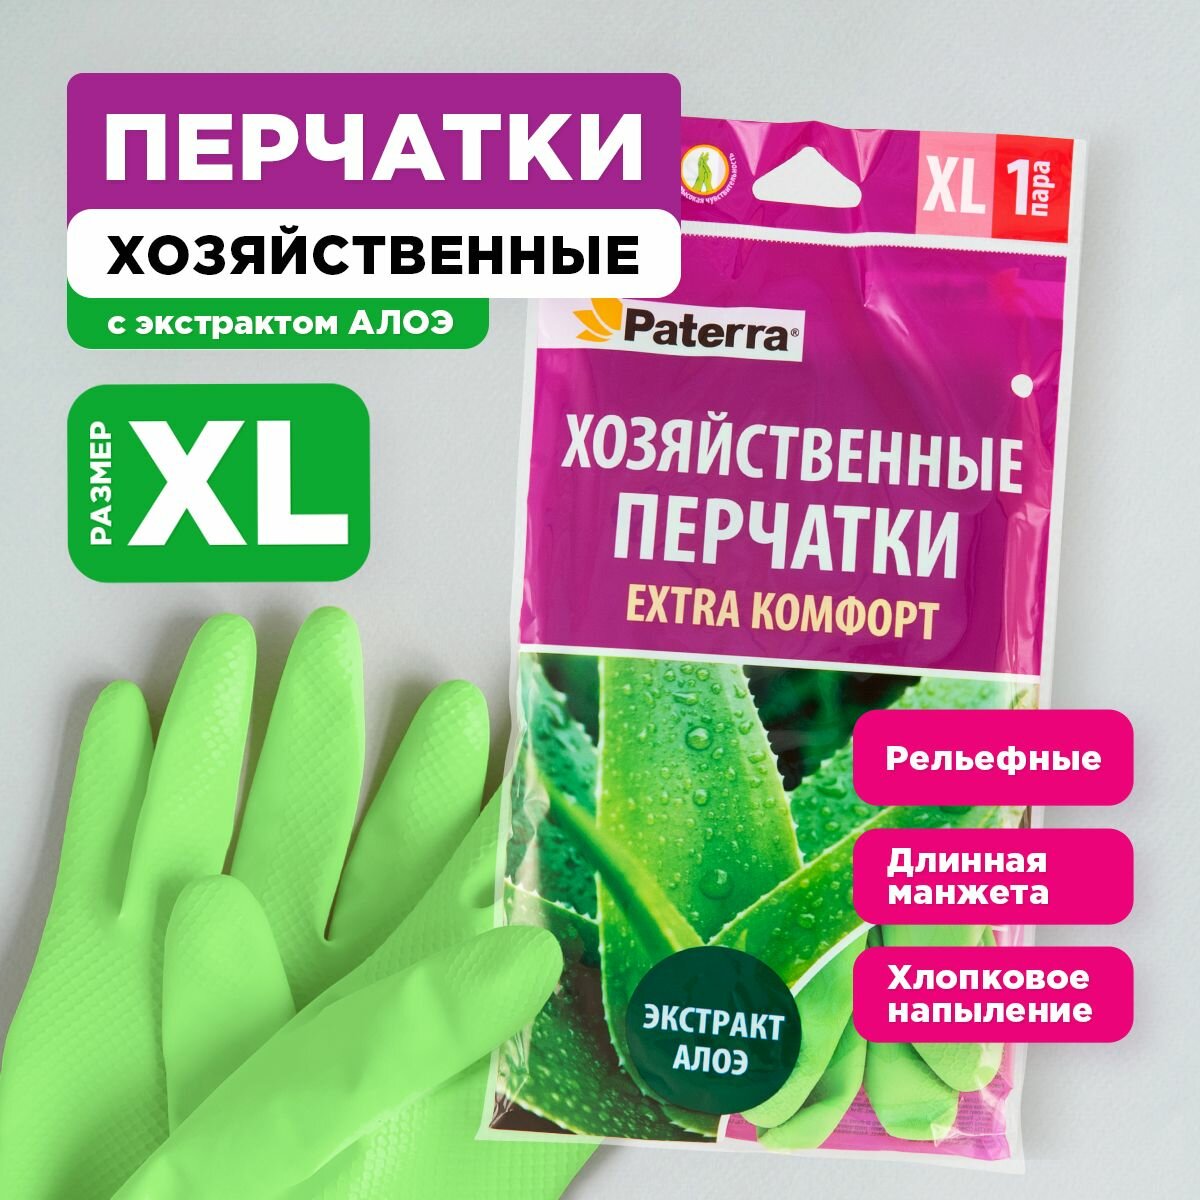 Перчатки резиновые EXTRA komфорт, PATERRA, р-р XL, 1 пара